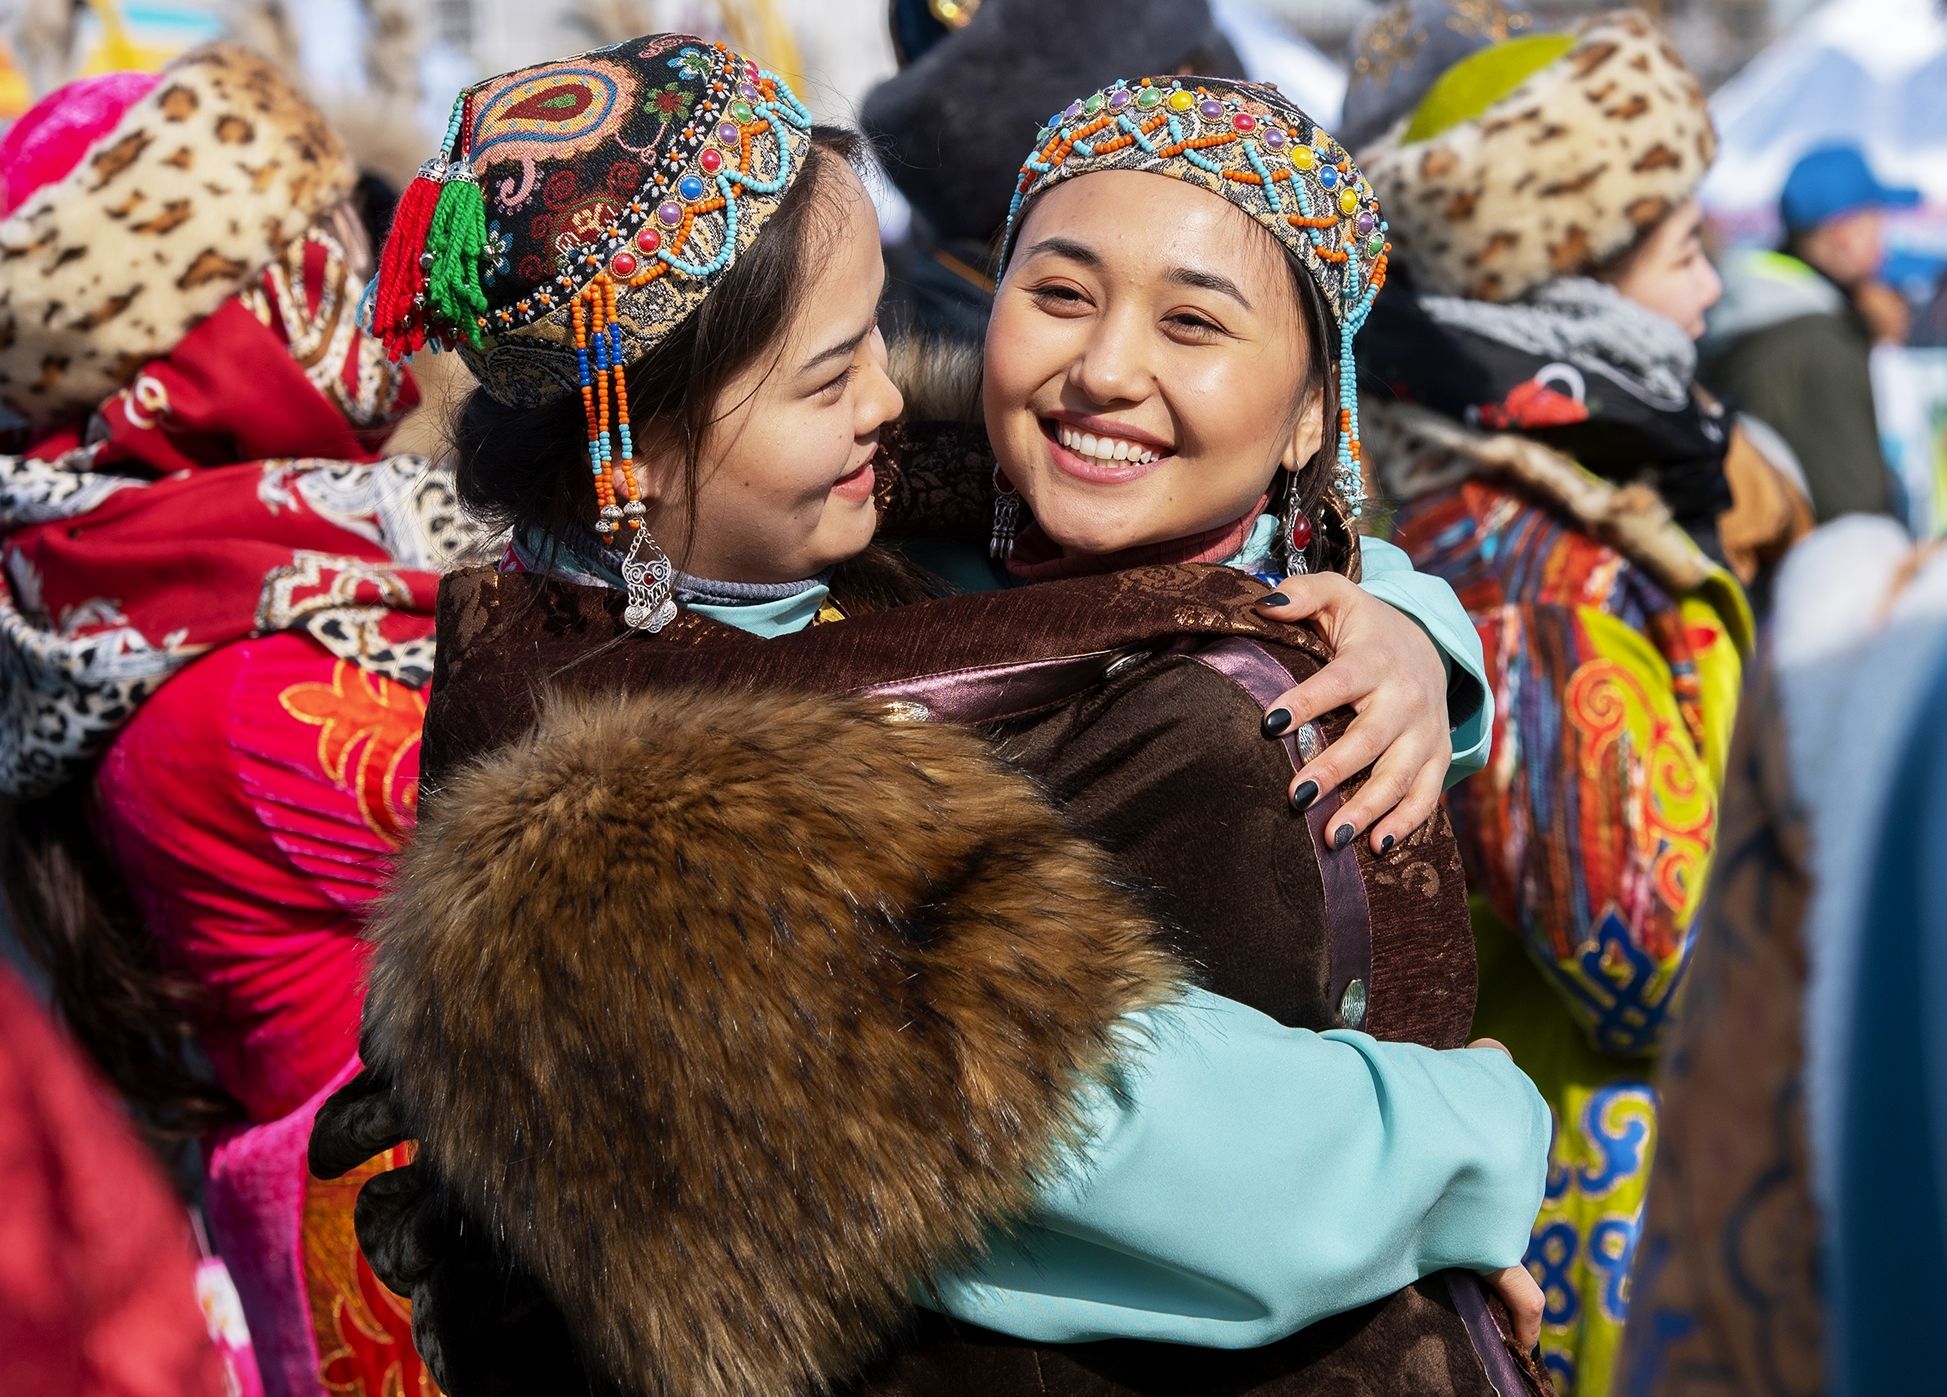 Национальности в казахстане